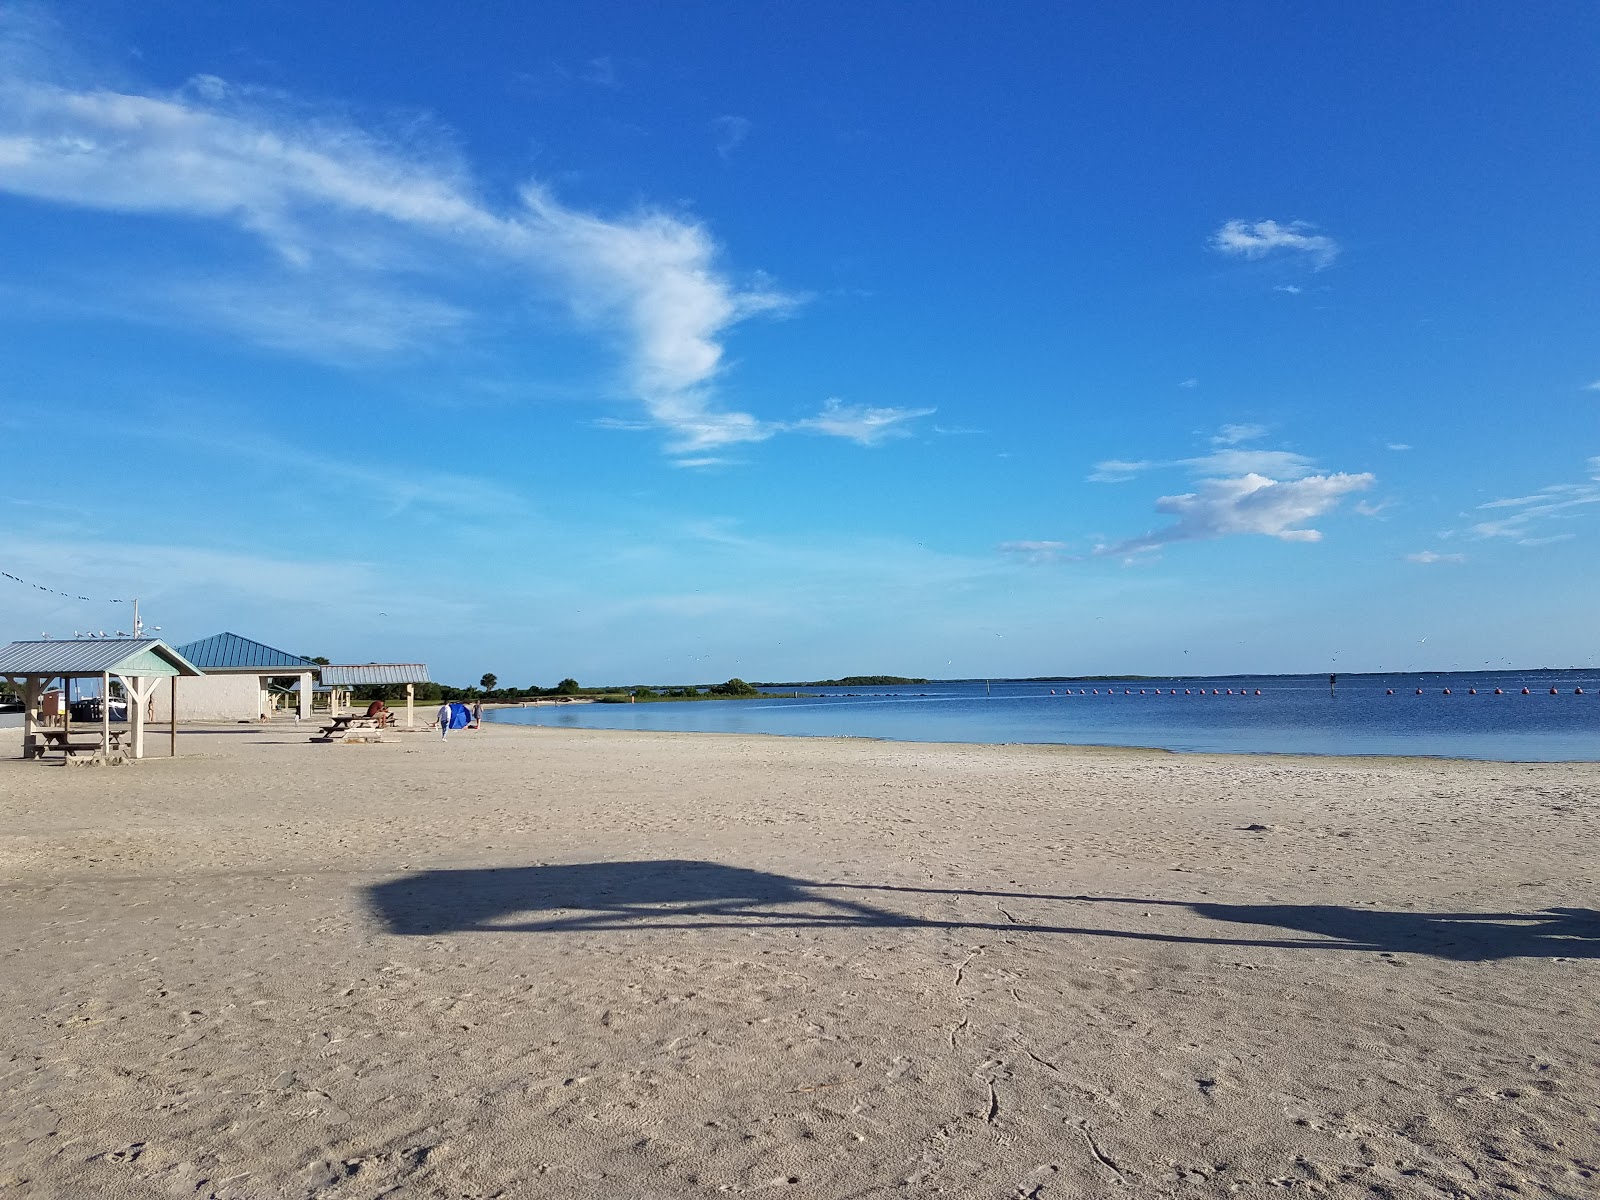 Fotografie cu Fort island beach - locul popular printre cunoscătorii de relaxare